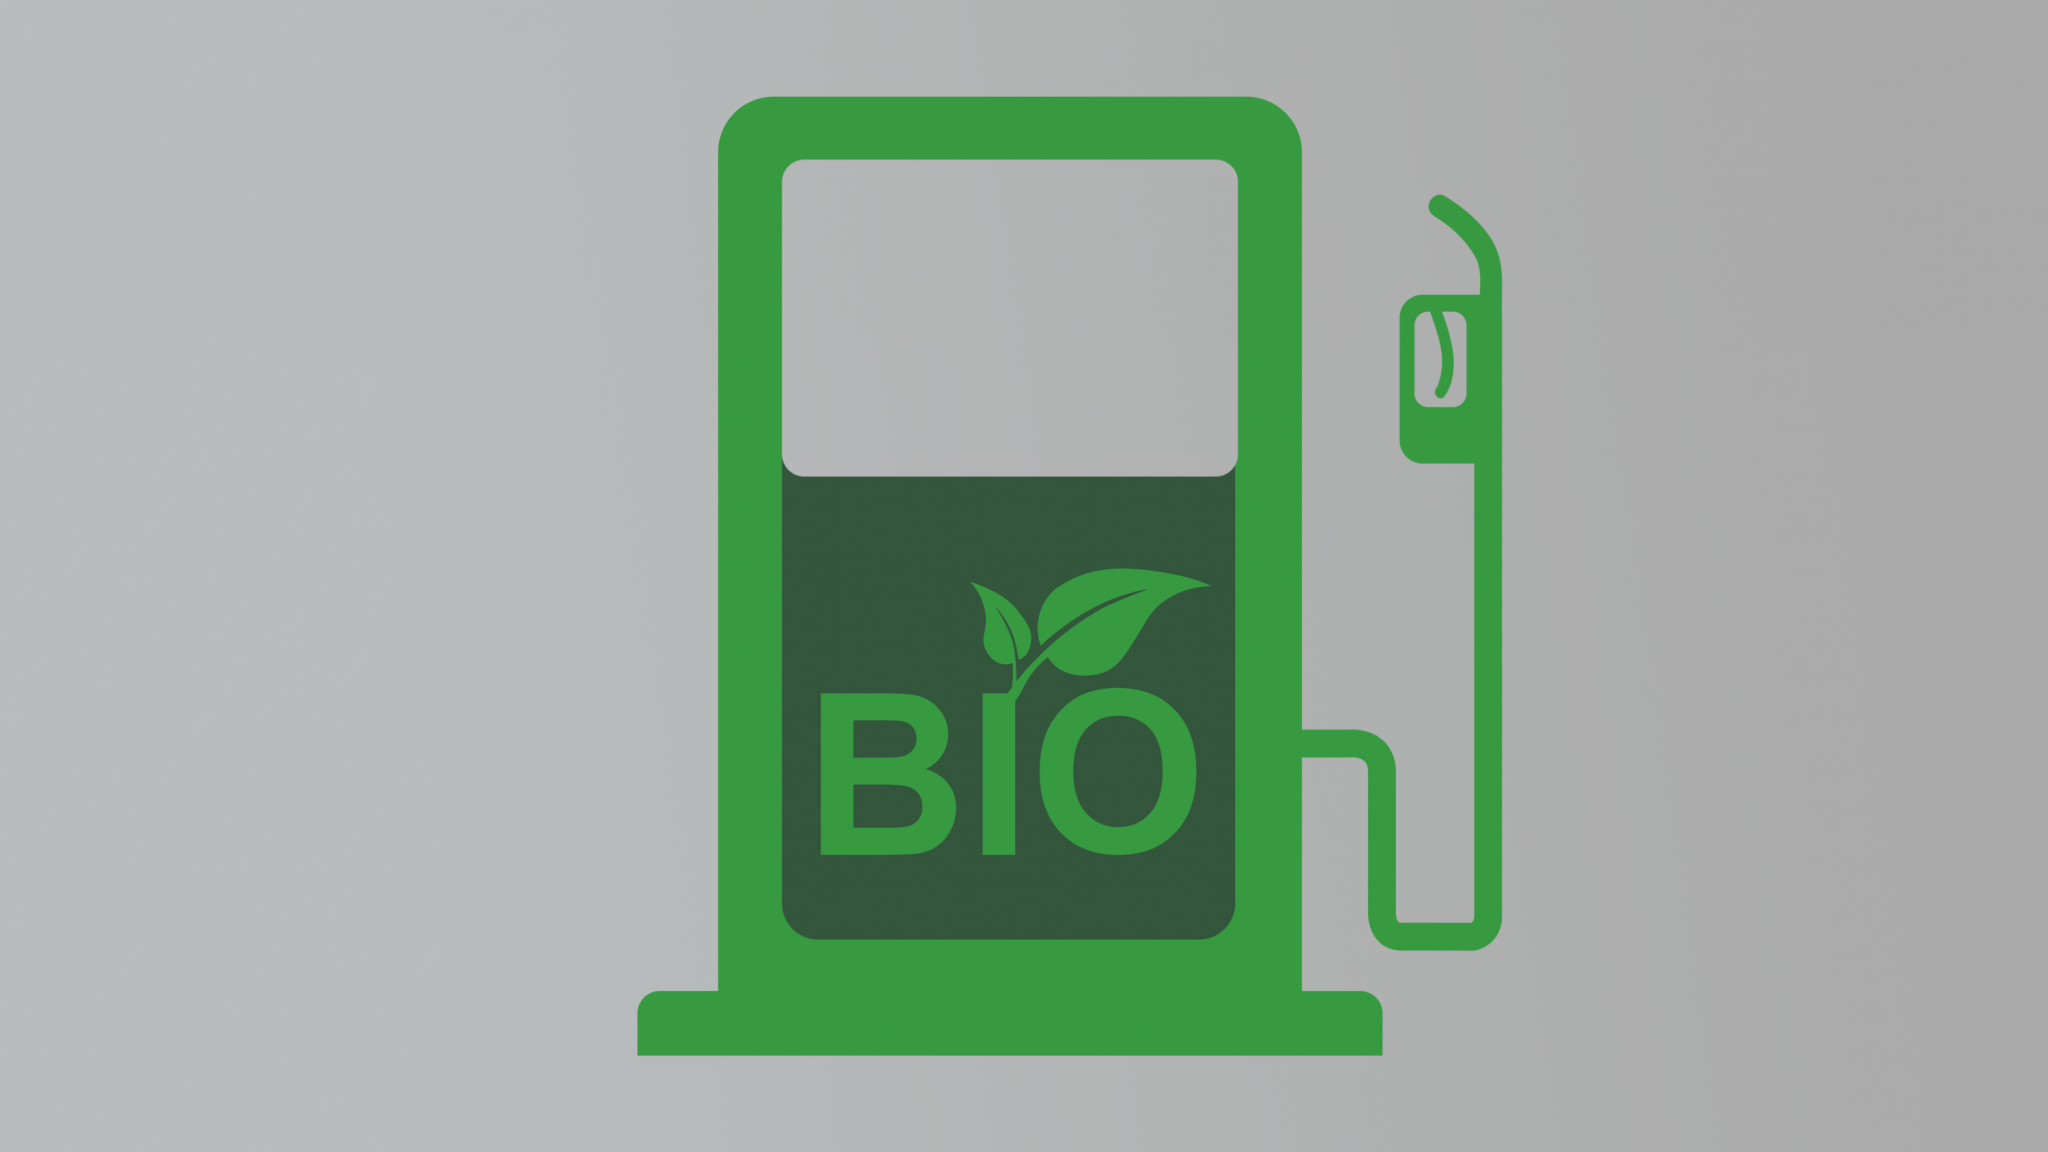 Stadig høyere omsetning av avansert biodrivstoff